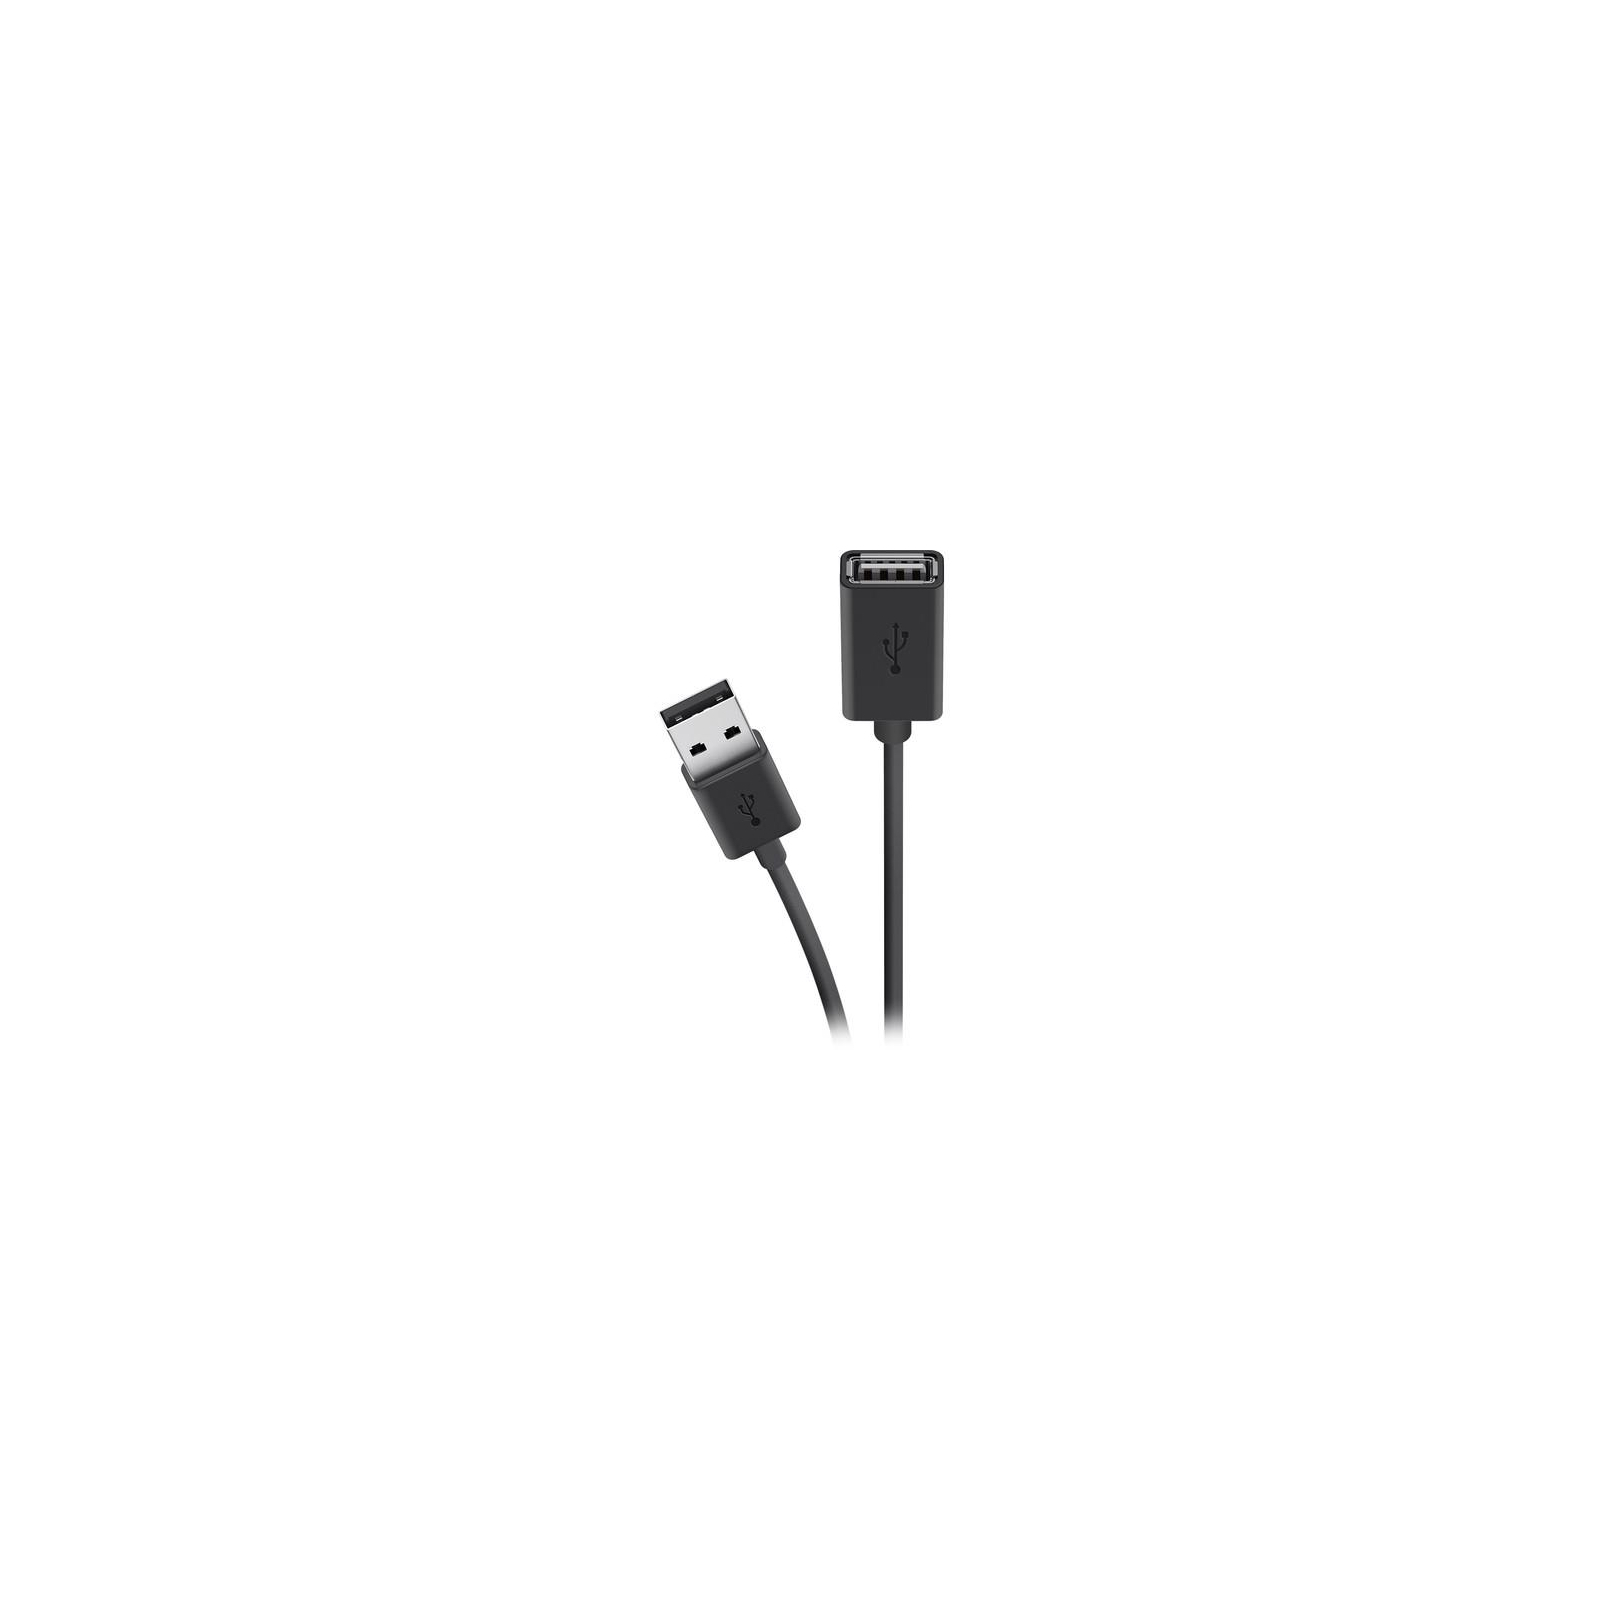 Дата кабель USB 2.0 AM/AF 3.0m Belkin (F3U153BT3M)